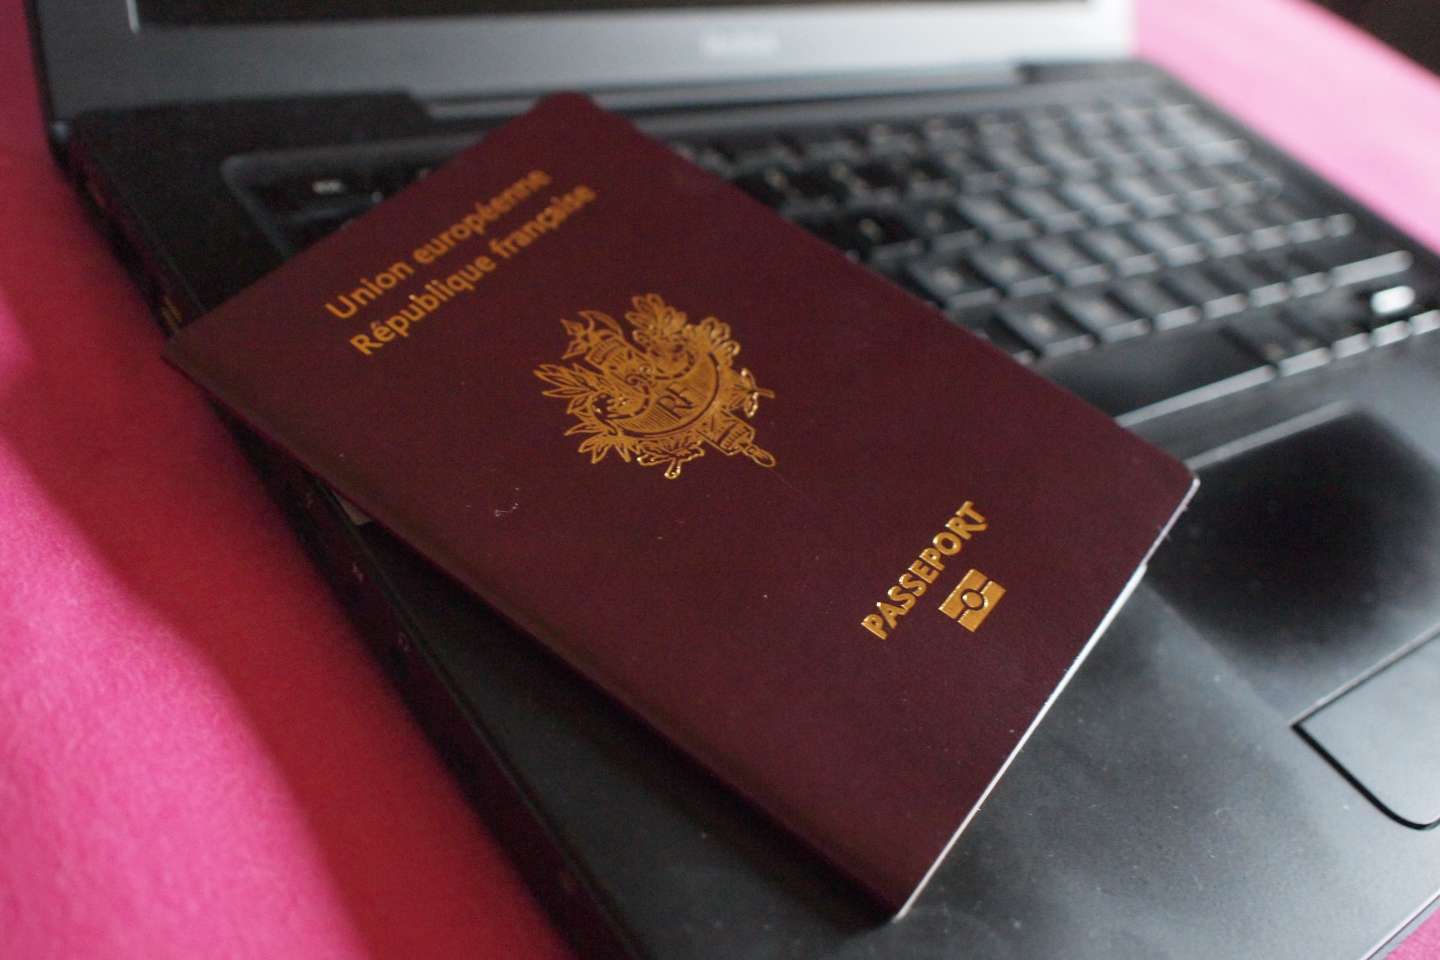 La remise des cartes d’identité et des passeports français perturbée par un « incident » informatique